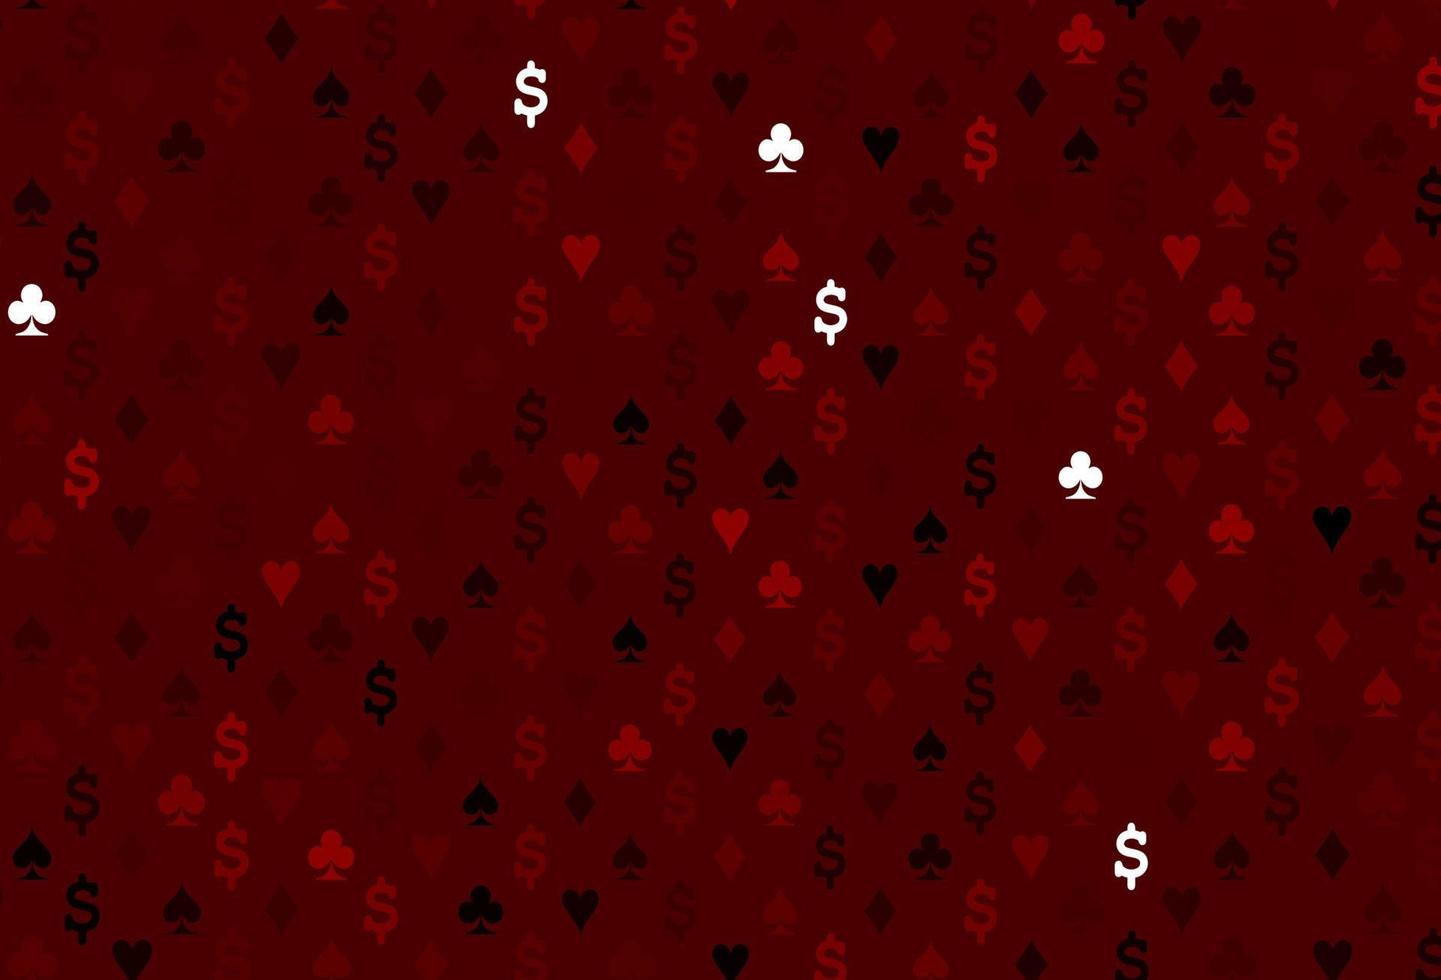 modelo de vetor vermelho escuro com símbolos de pôquer.